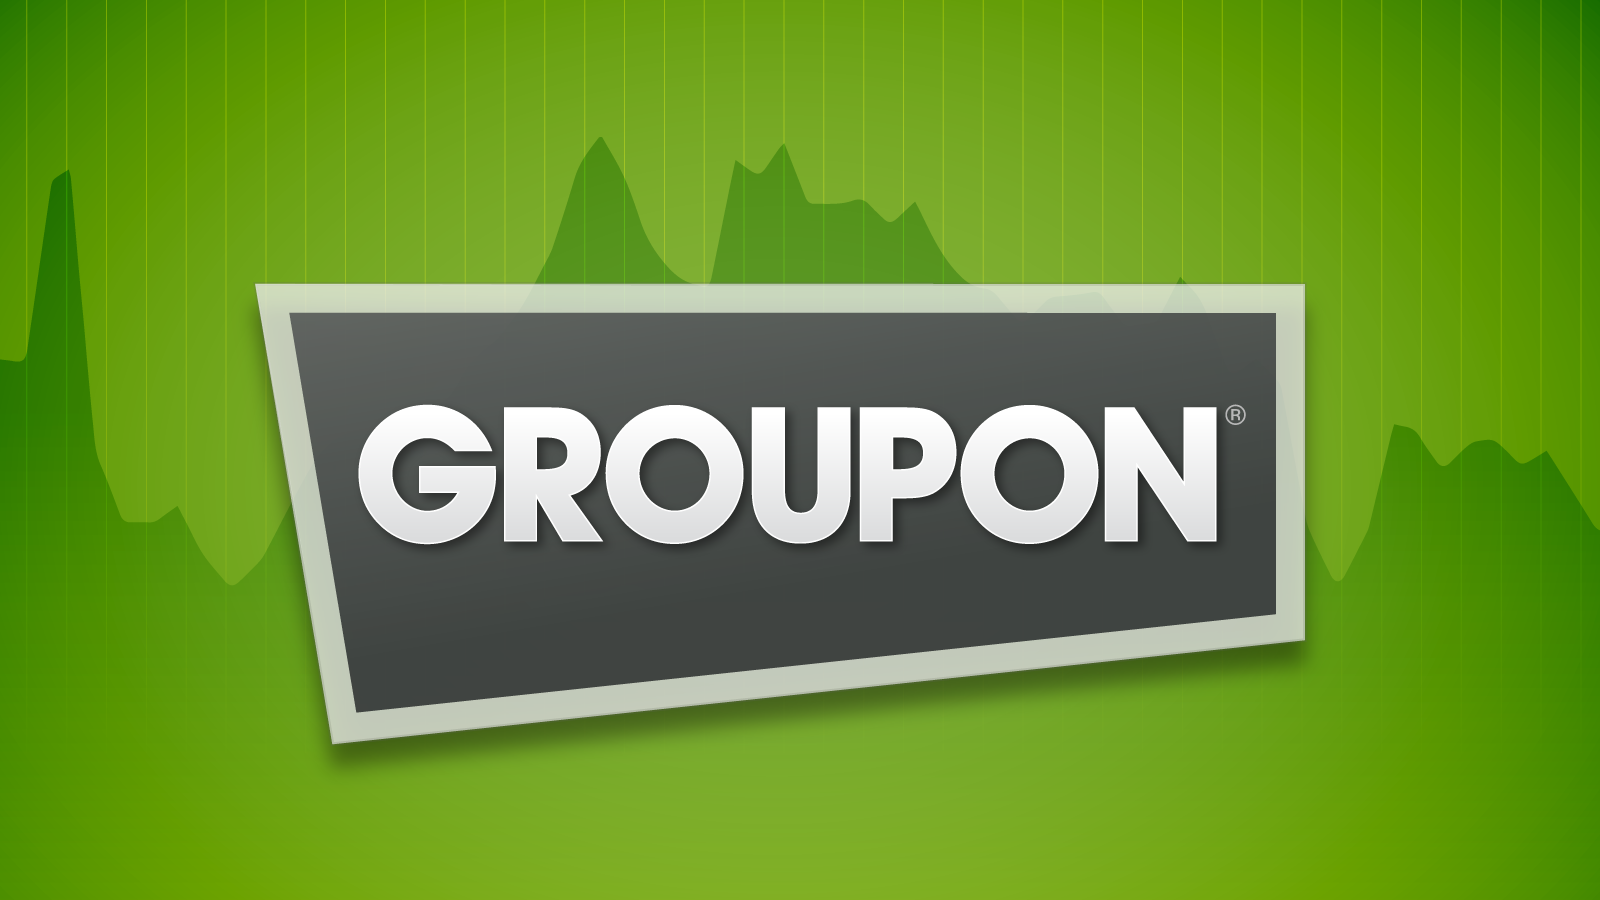 an image of Groupon